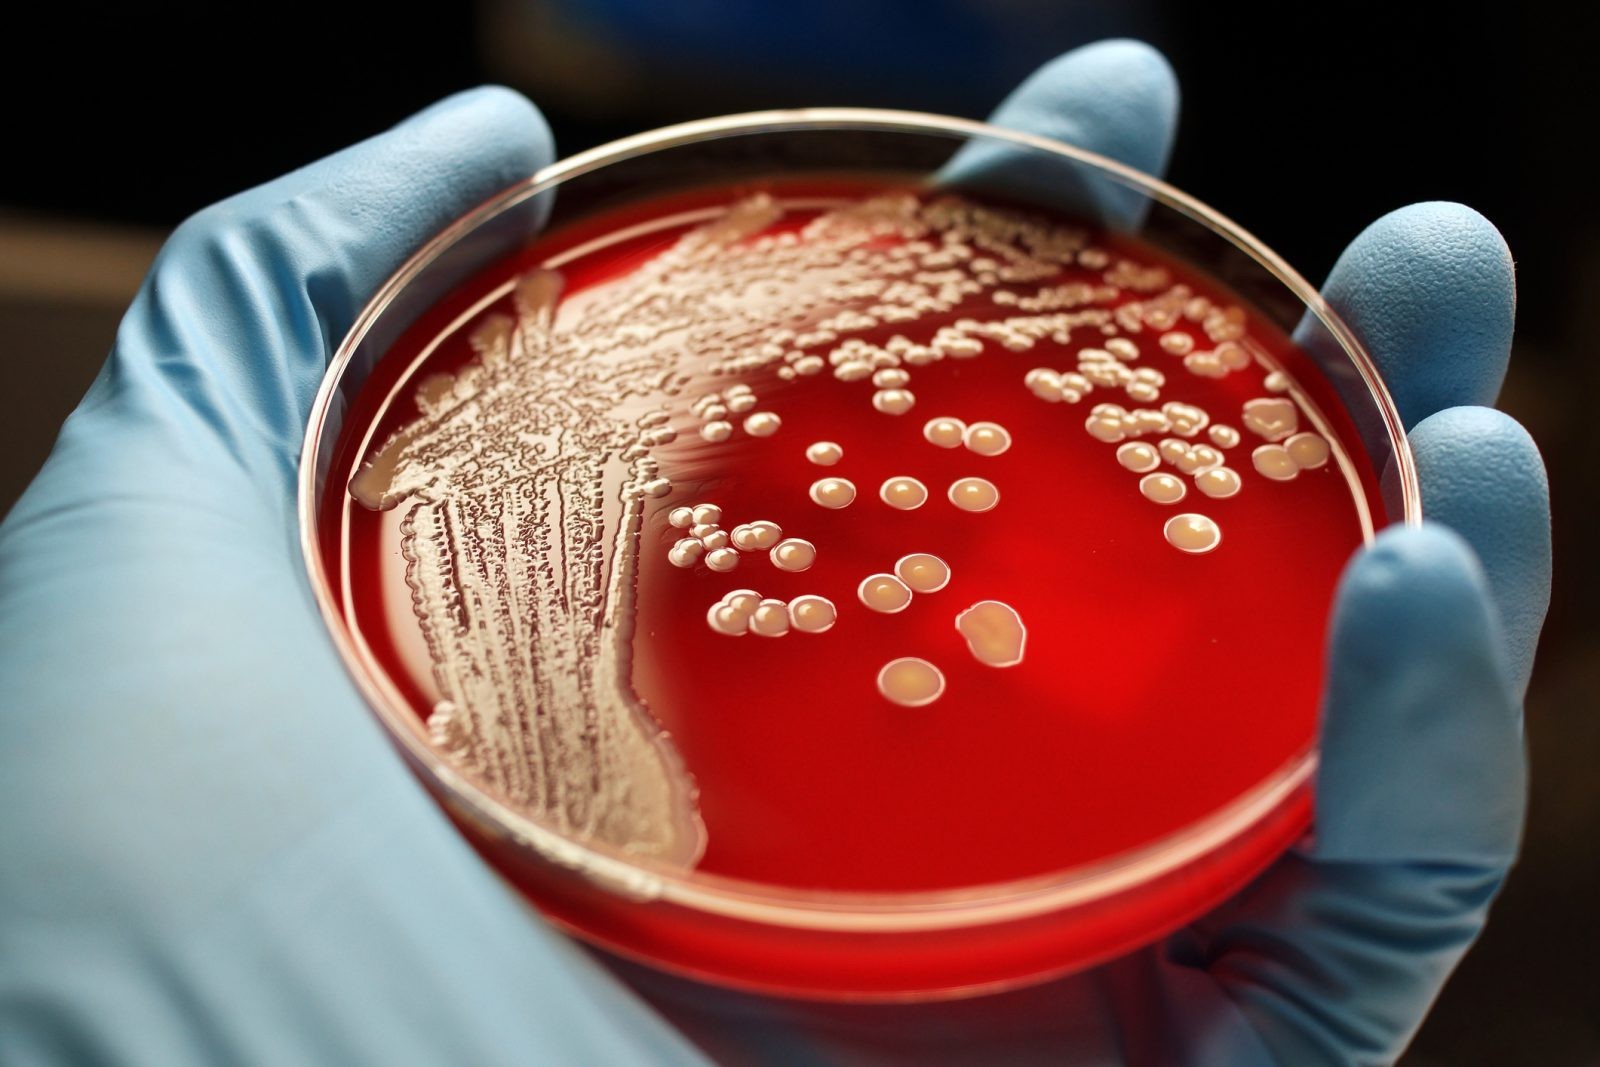 Kolistyna dziurawi bakterie. Naukowcy wiedzą, jak ulepszyć ten antybiotyk